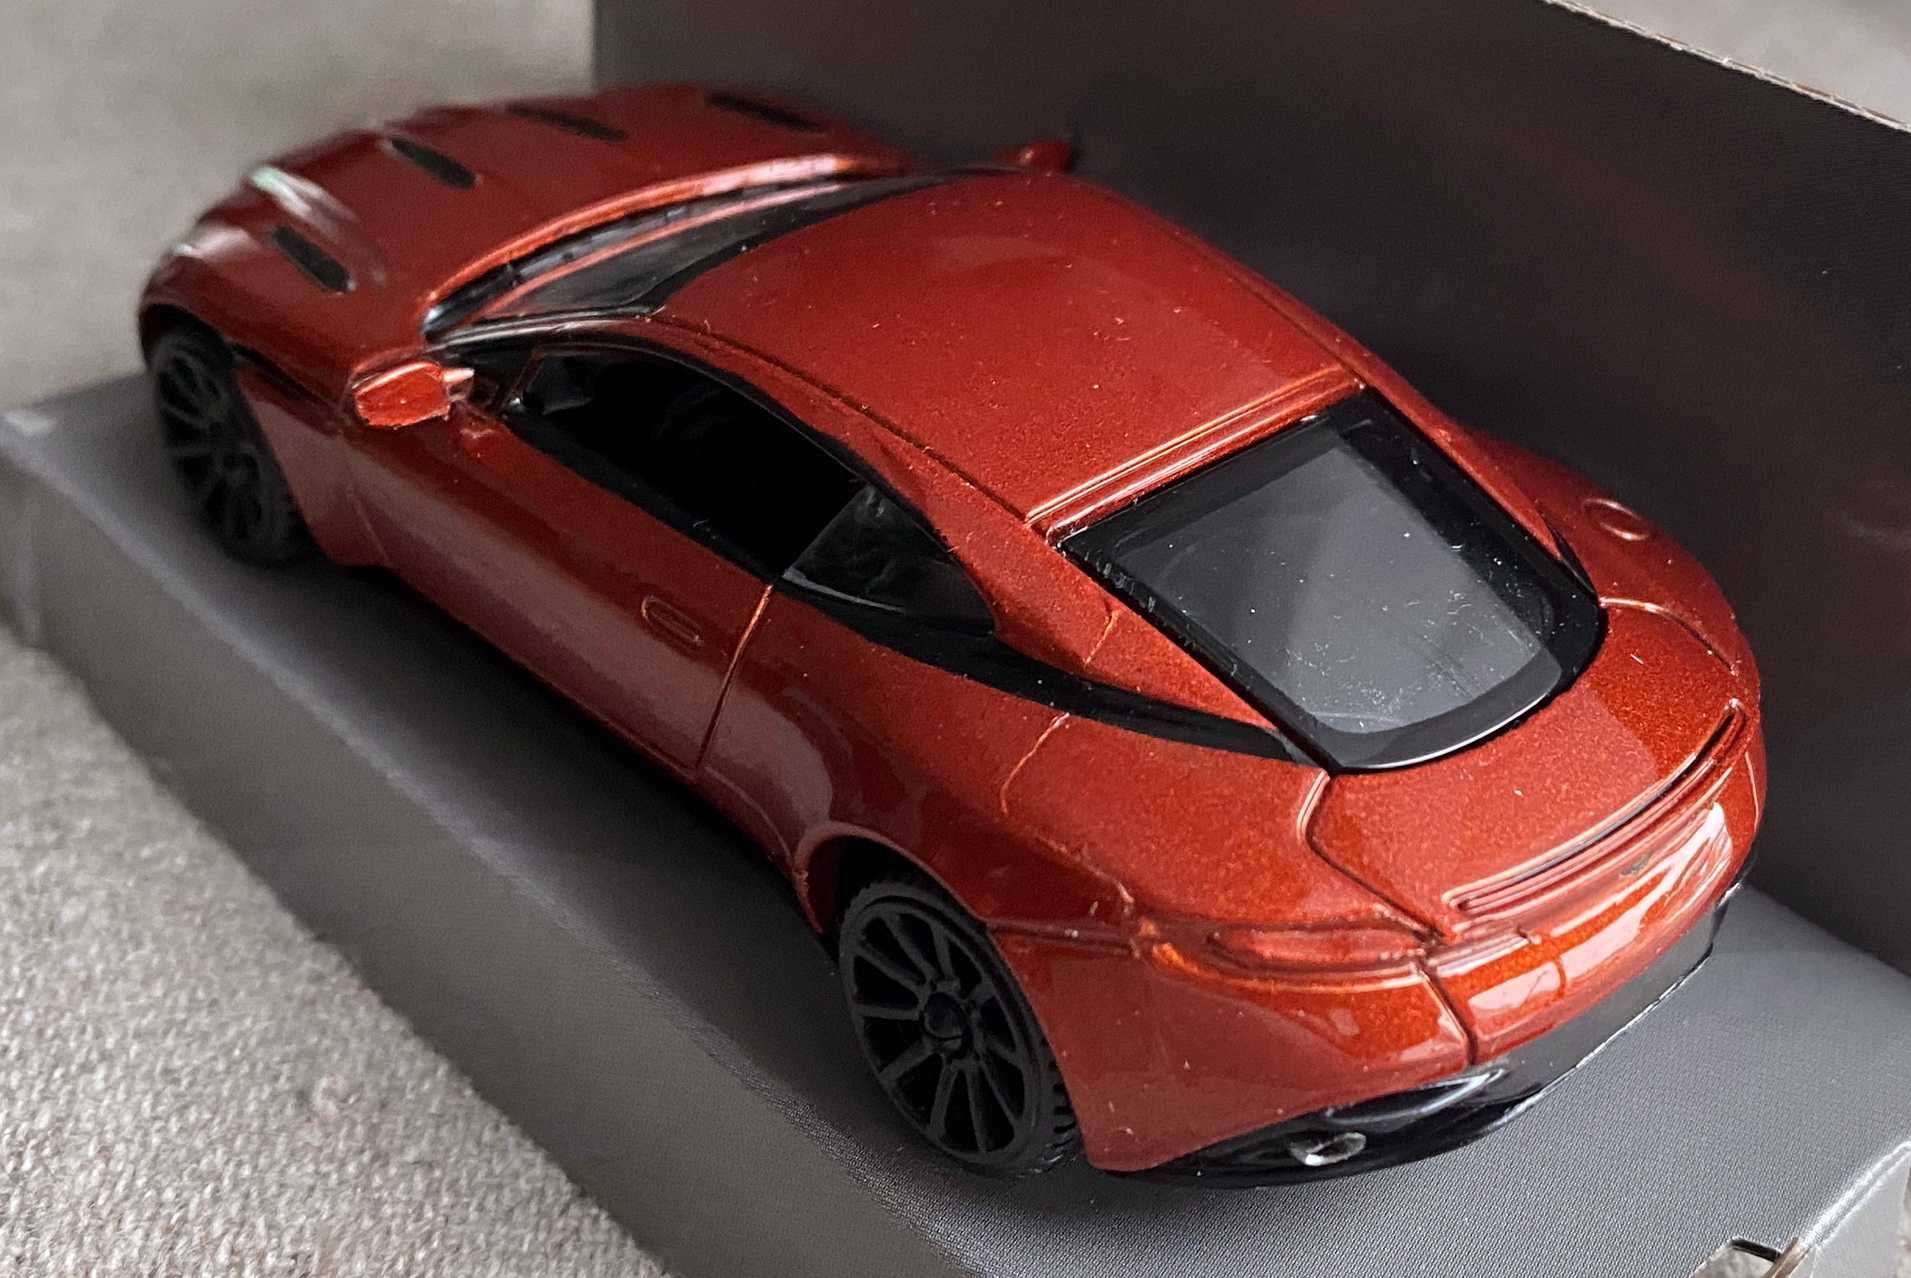 Macheta Aston Martin Db11  1 43 - noua la cutie - metal